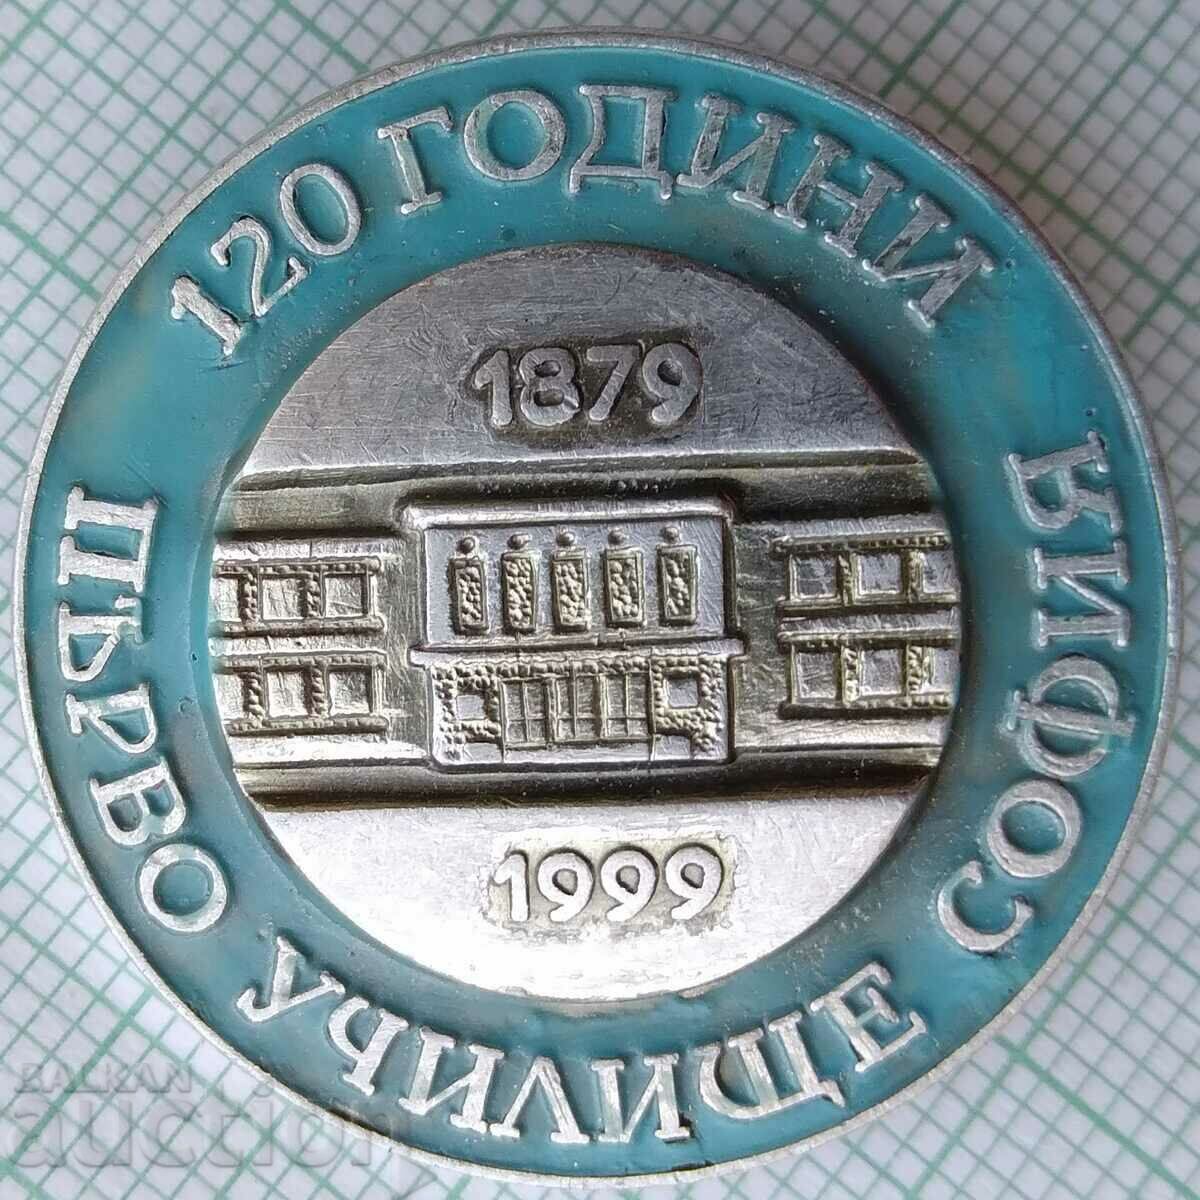 16285 Значка - 120г. Първо Училище София 1879-1999